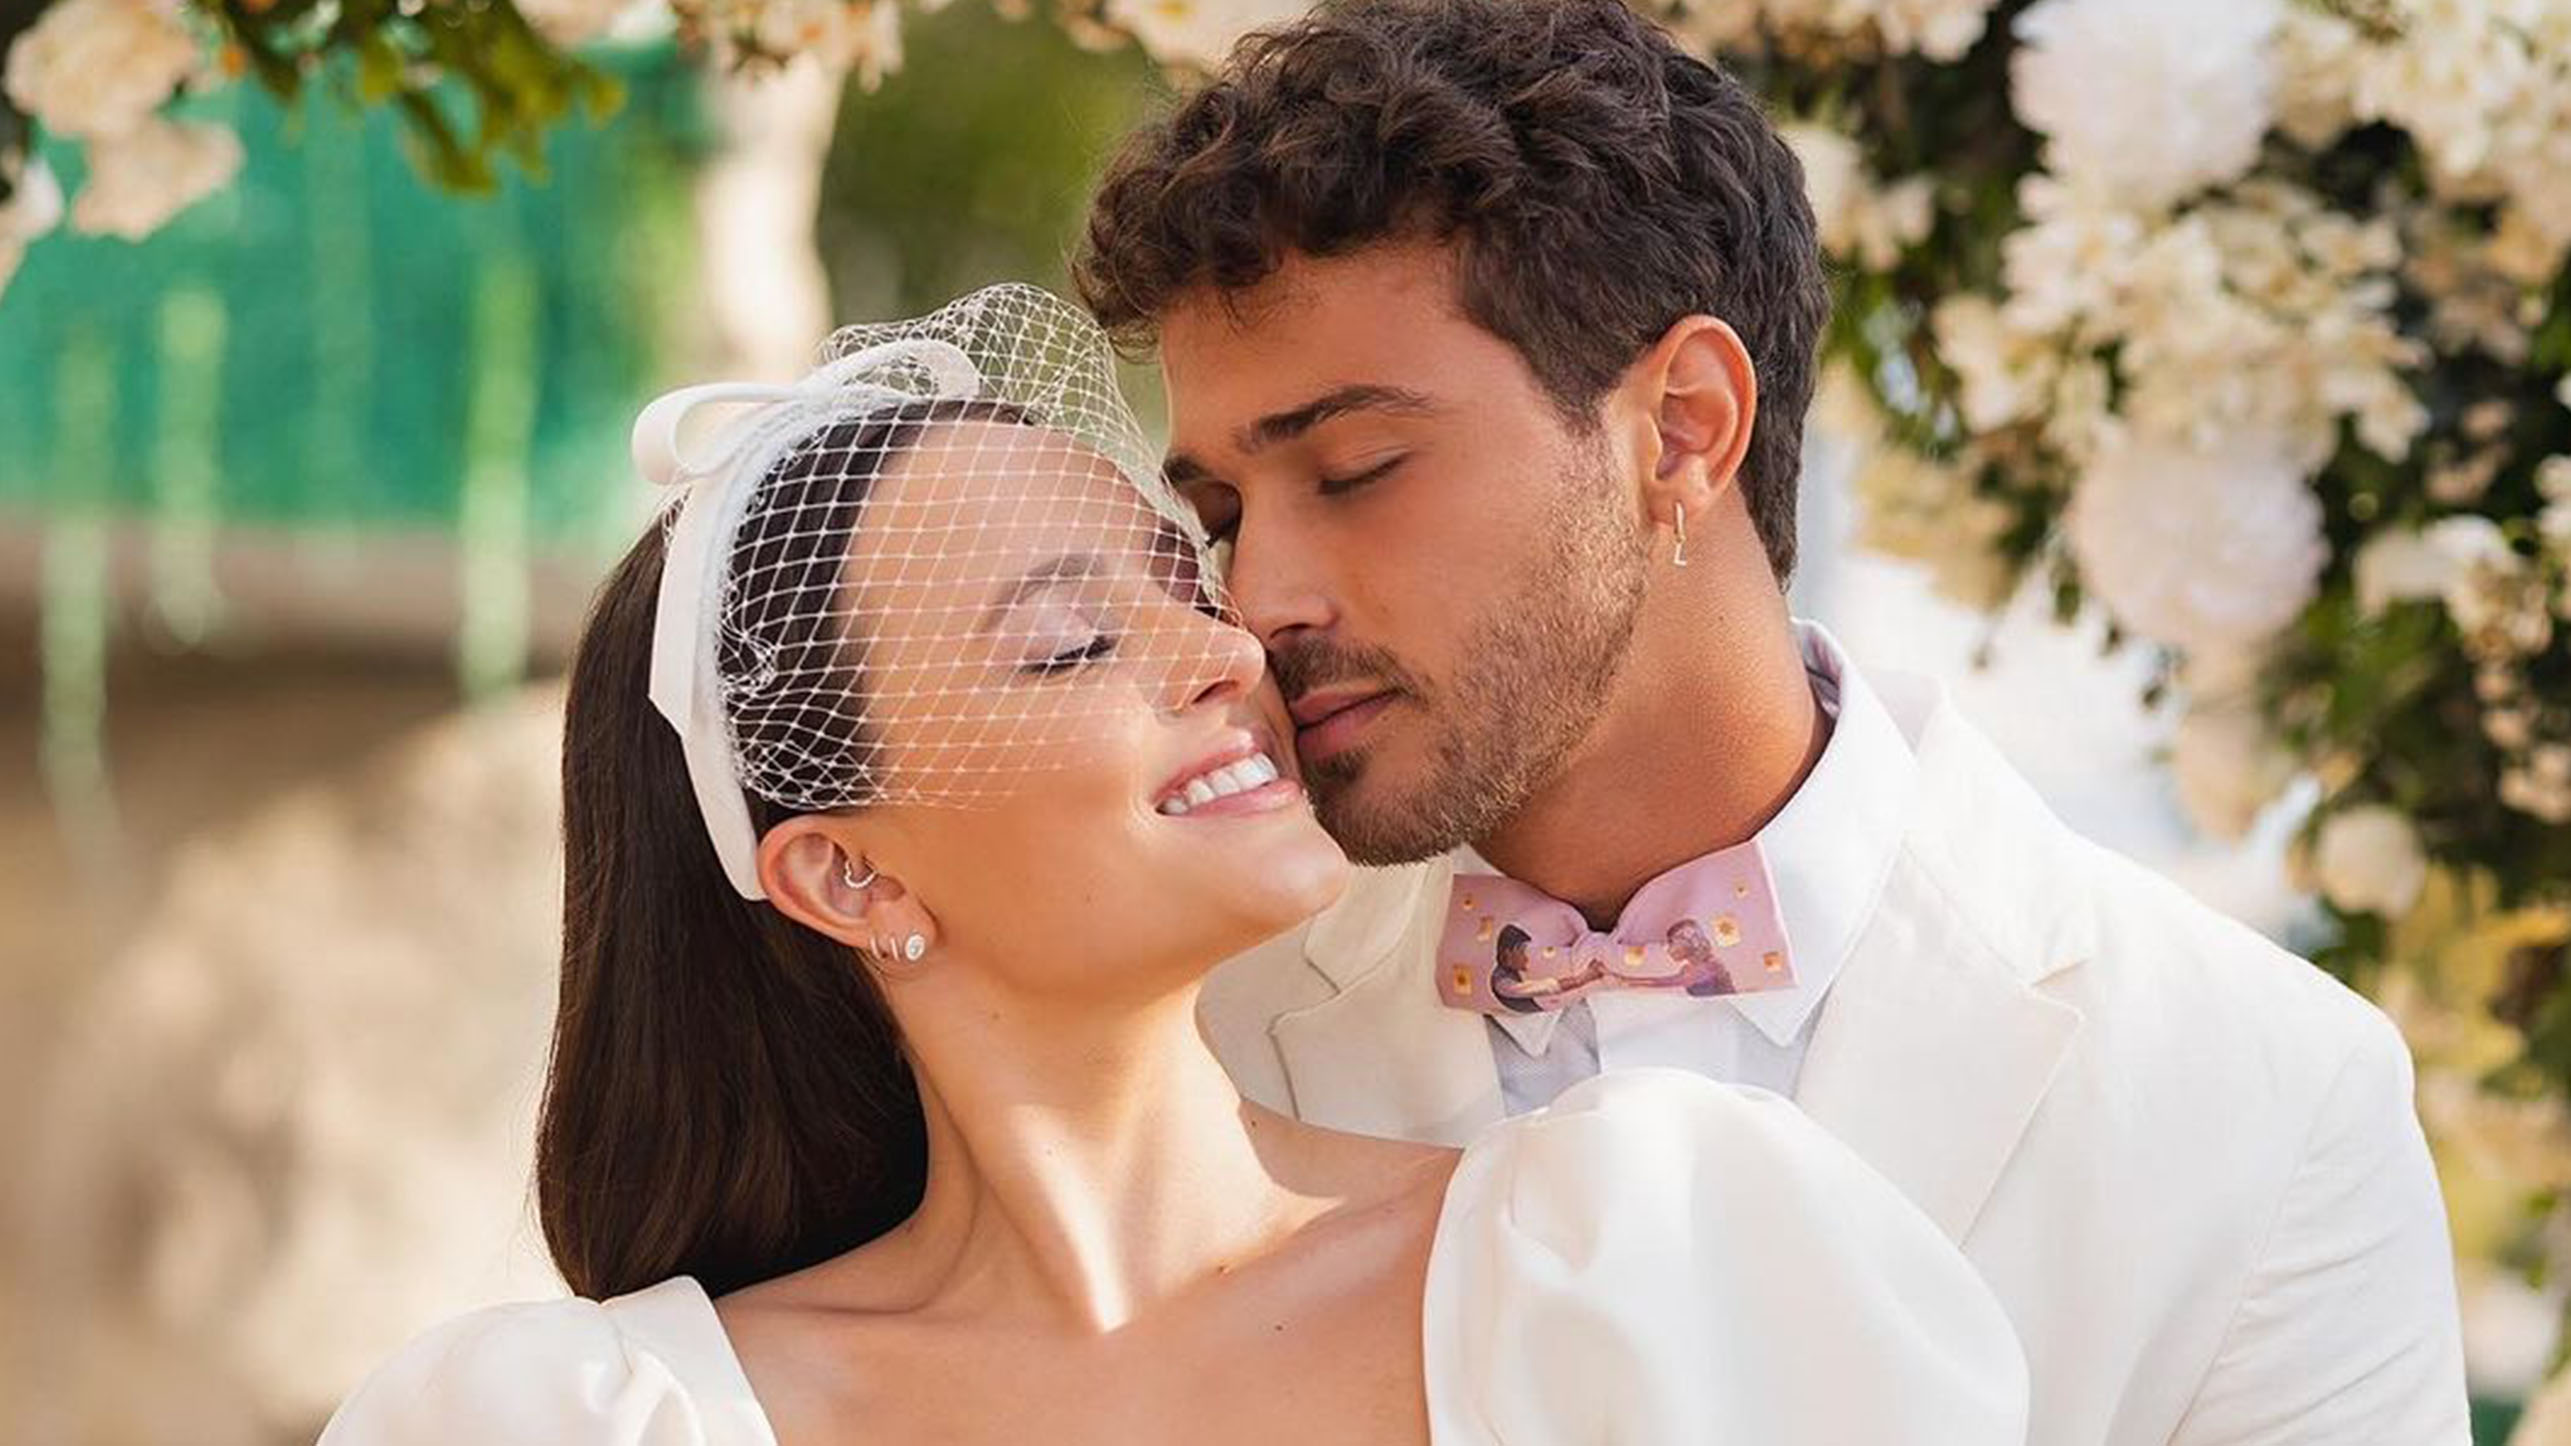 Larissa e André estavam noivos desde o fim de 2022. A atriz apostou em um vestido curto e clean para a cerimônia, enquanto André investiu em um terno branco